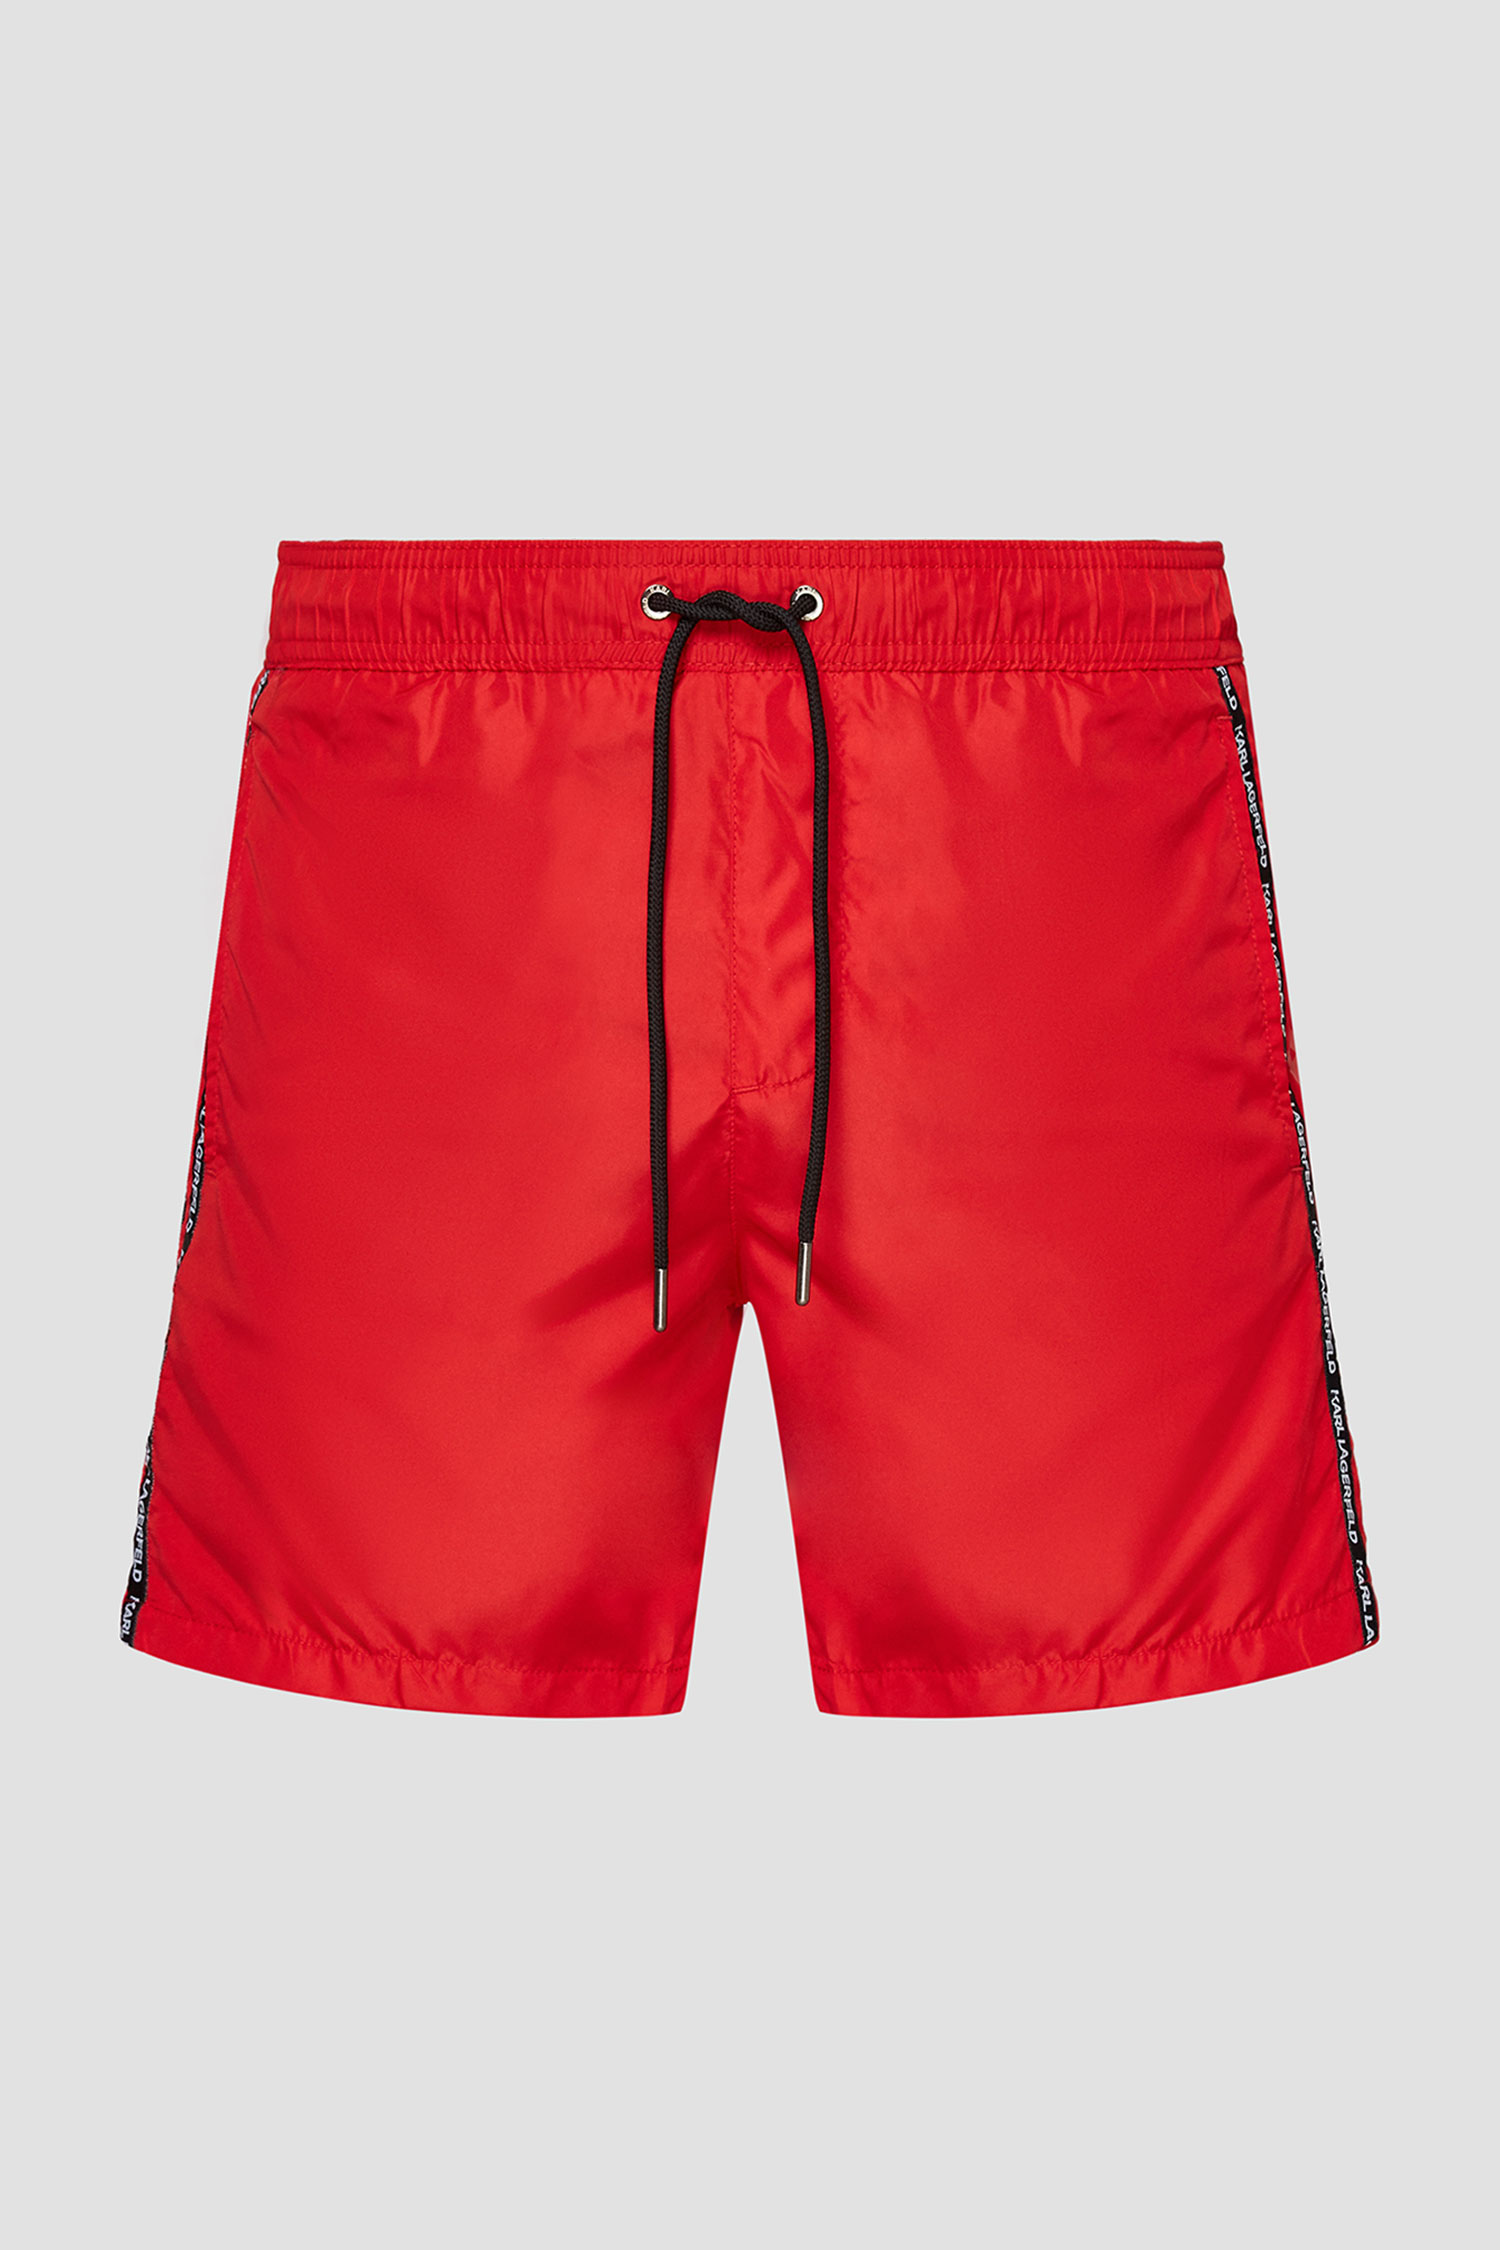 Красные плавательные шорты для парней Karl Lagerfeld KL21MBM03;RED